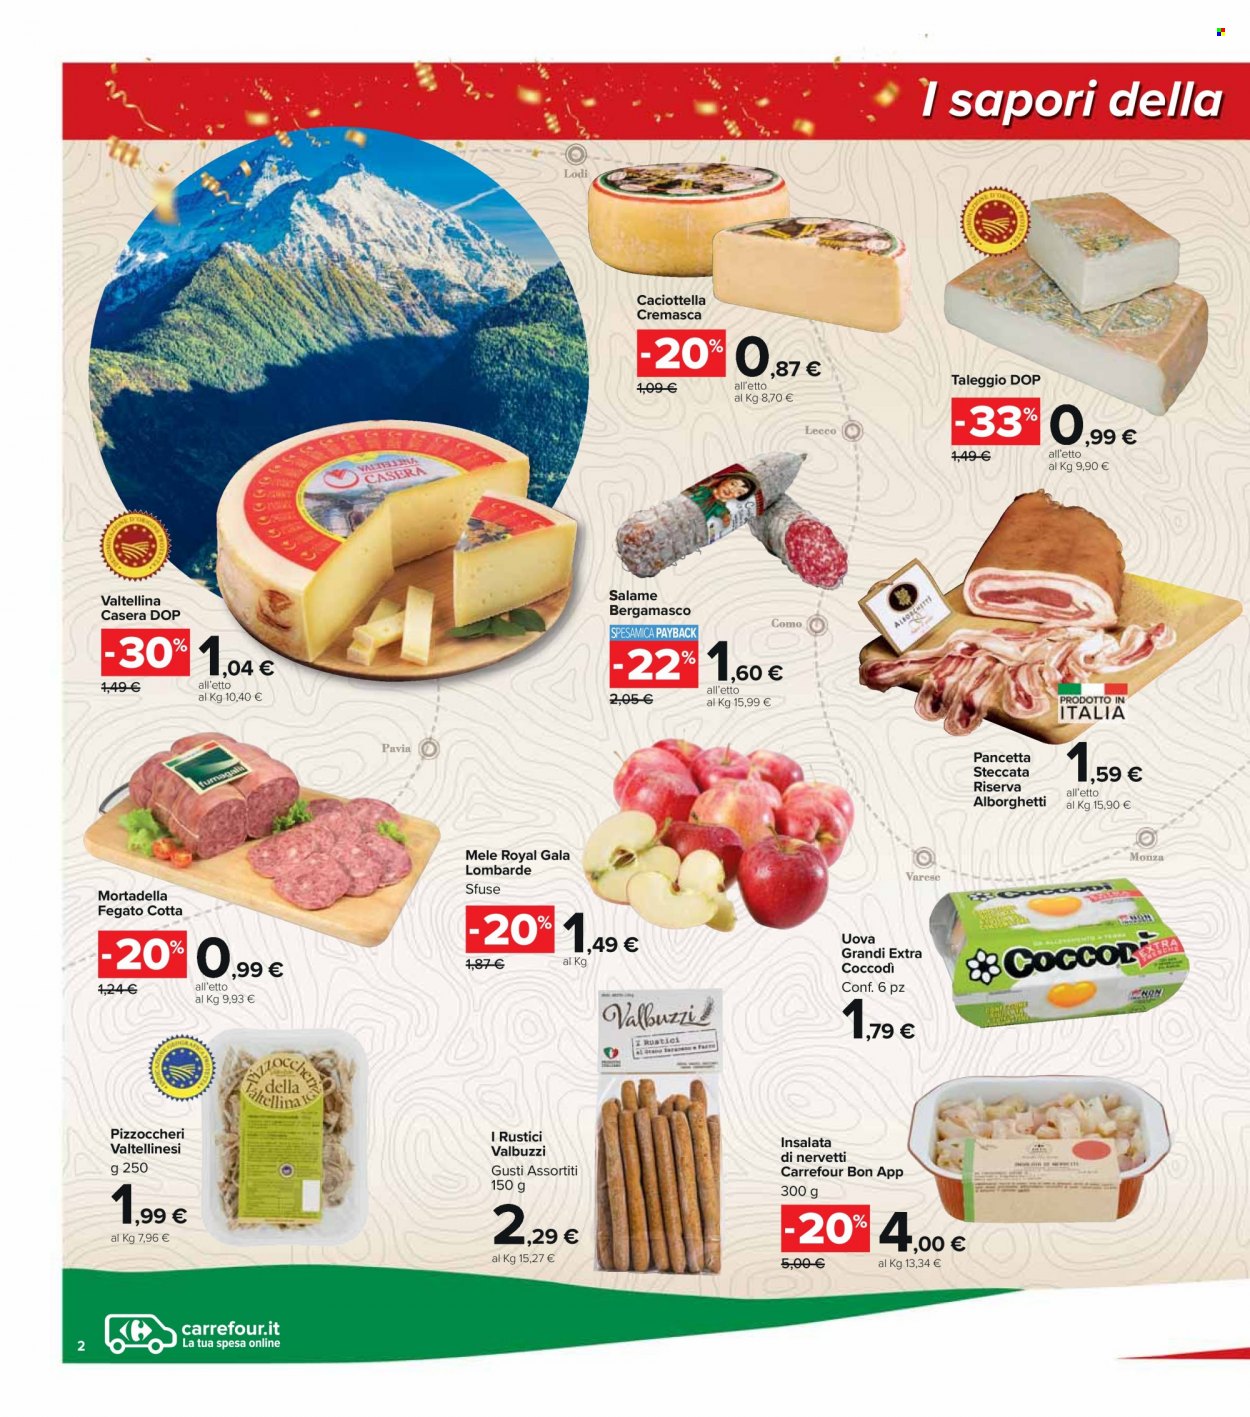 thumbnail - Volantino Carrefour - Prodotti in offerta - mele, fegato, salame, pancetta, mortadella, formaggio, taleggio, uova. Pagina 2.